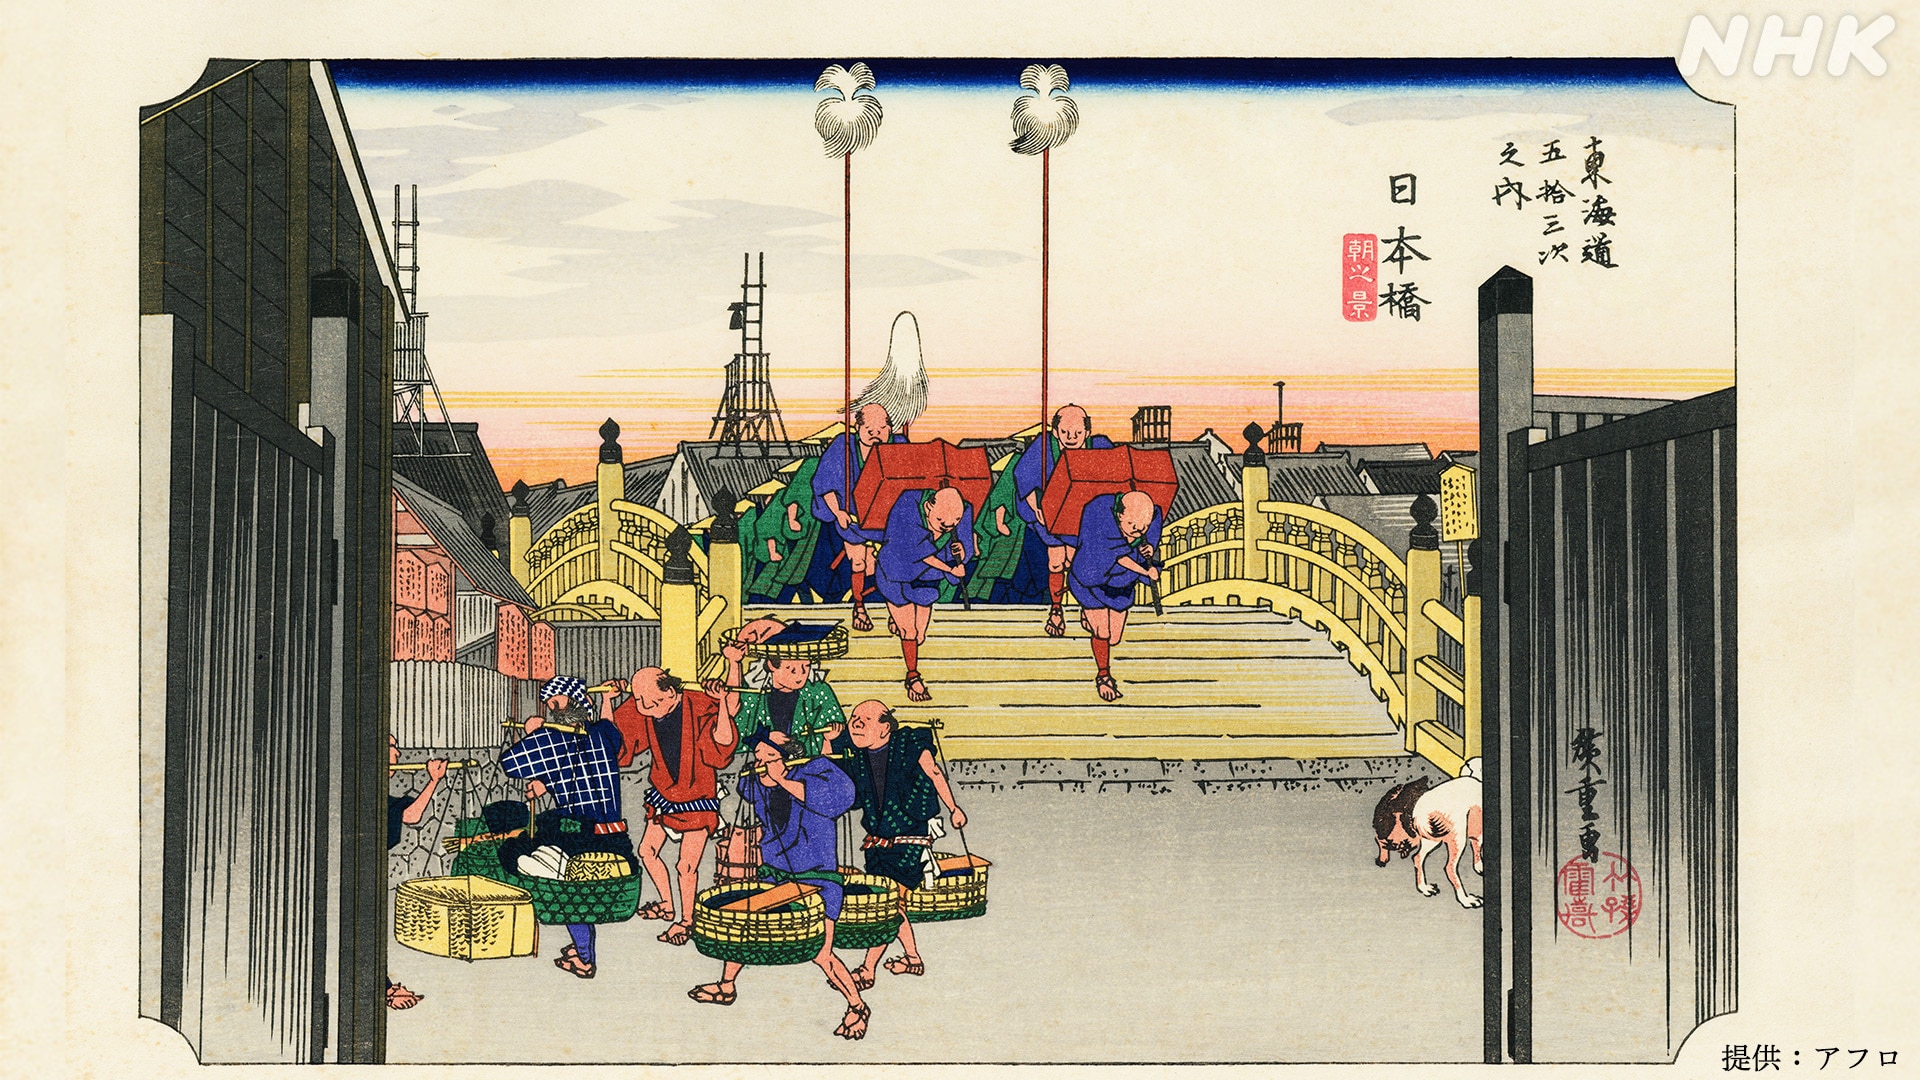 東海道五十三次で描かれた日本橋